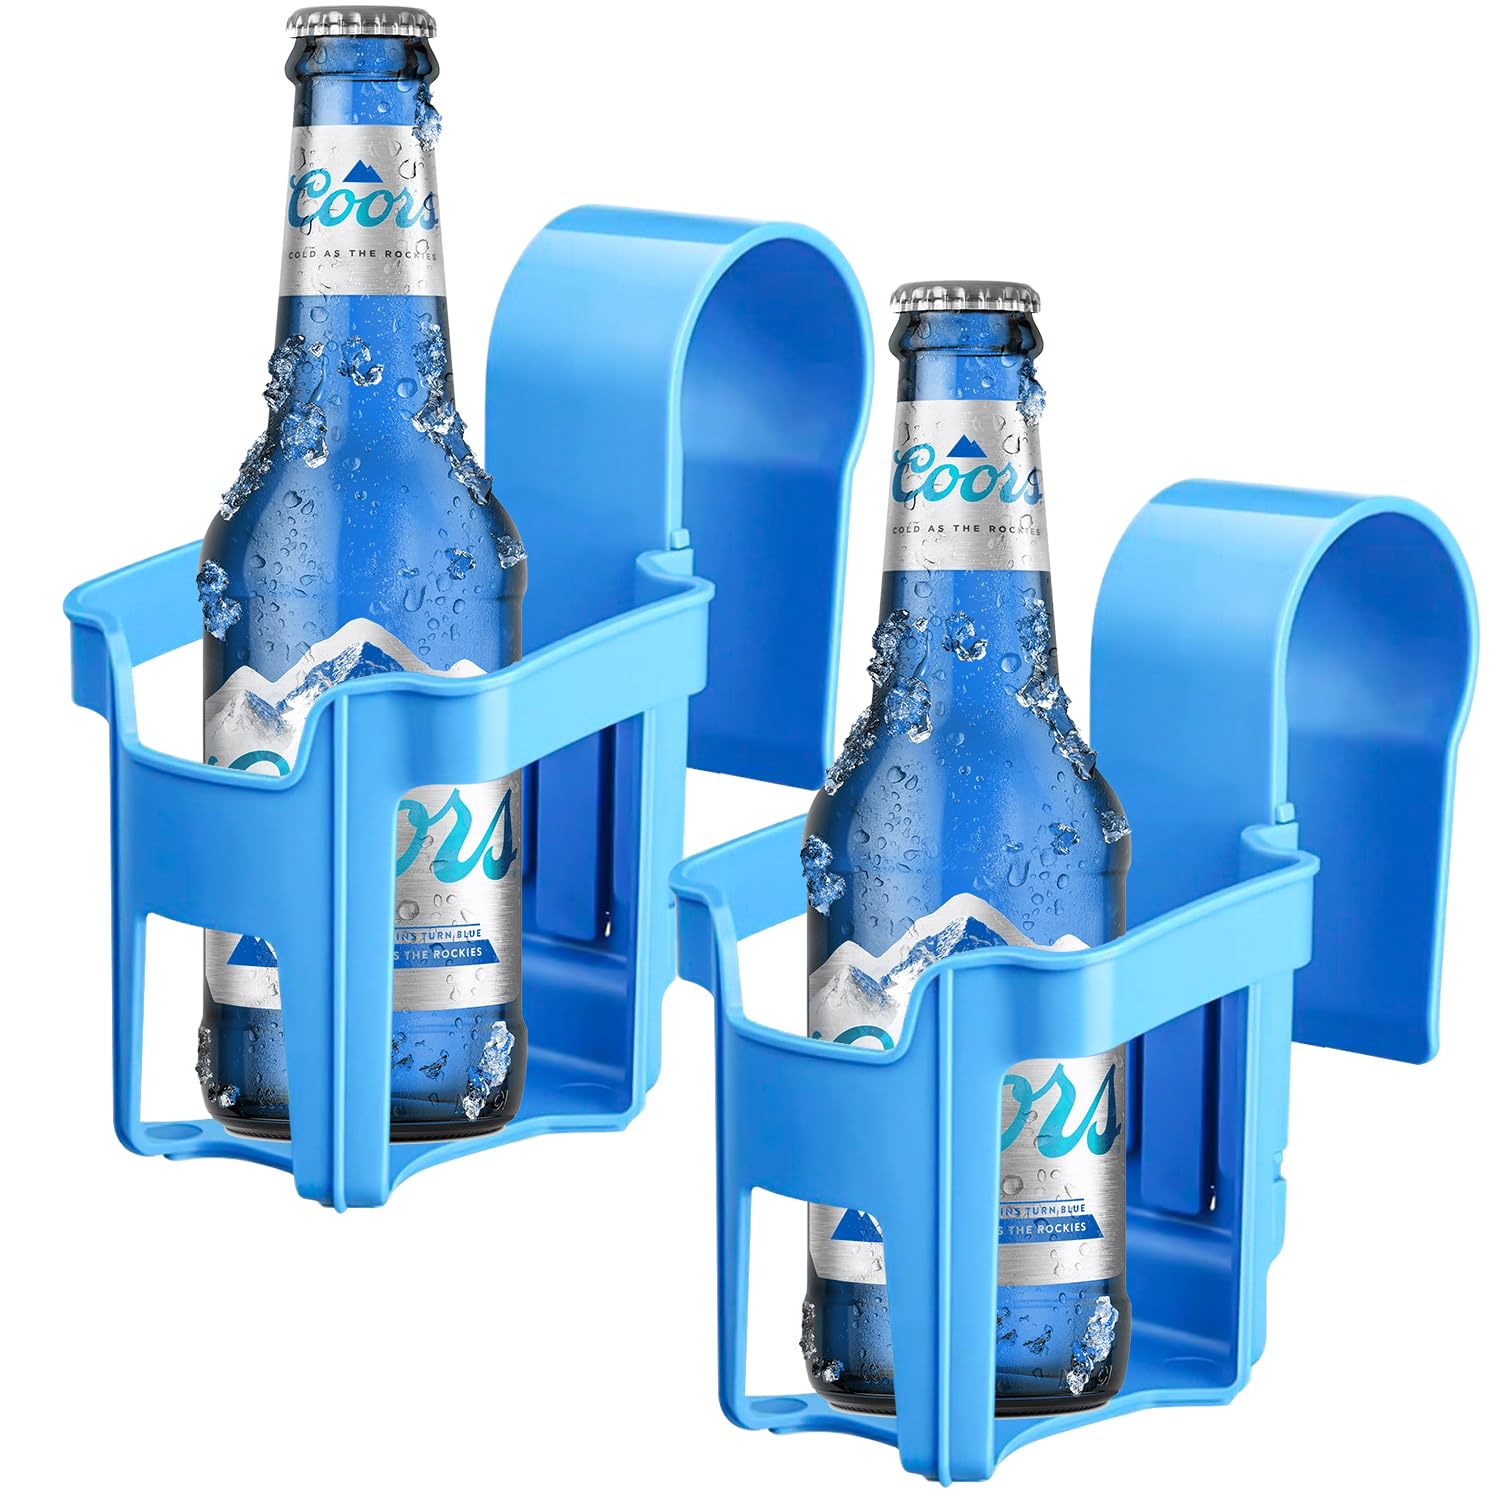 2 Stück Poolrand Getränkehalter, Multifunktionaler Poolzubehör, Pool Getränkehalter Bier, Verbesserter Poolside Getränkehalter für Pools, Heiße Quellen(Blau) von Lonimia